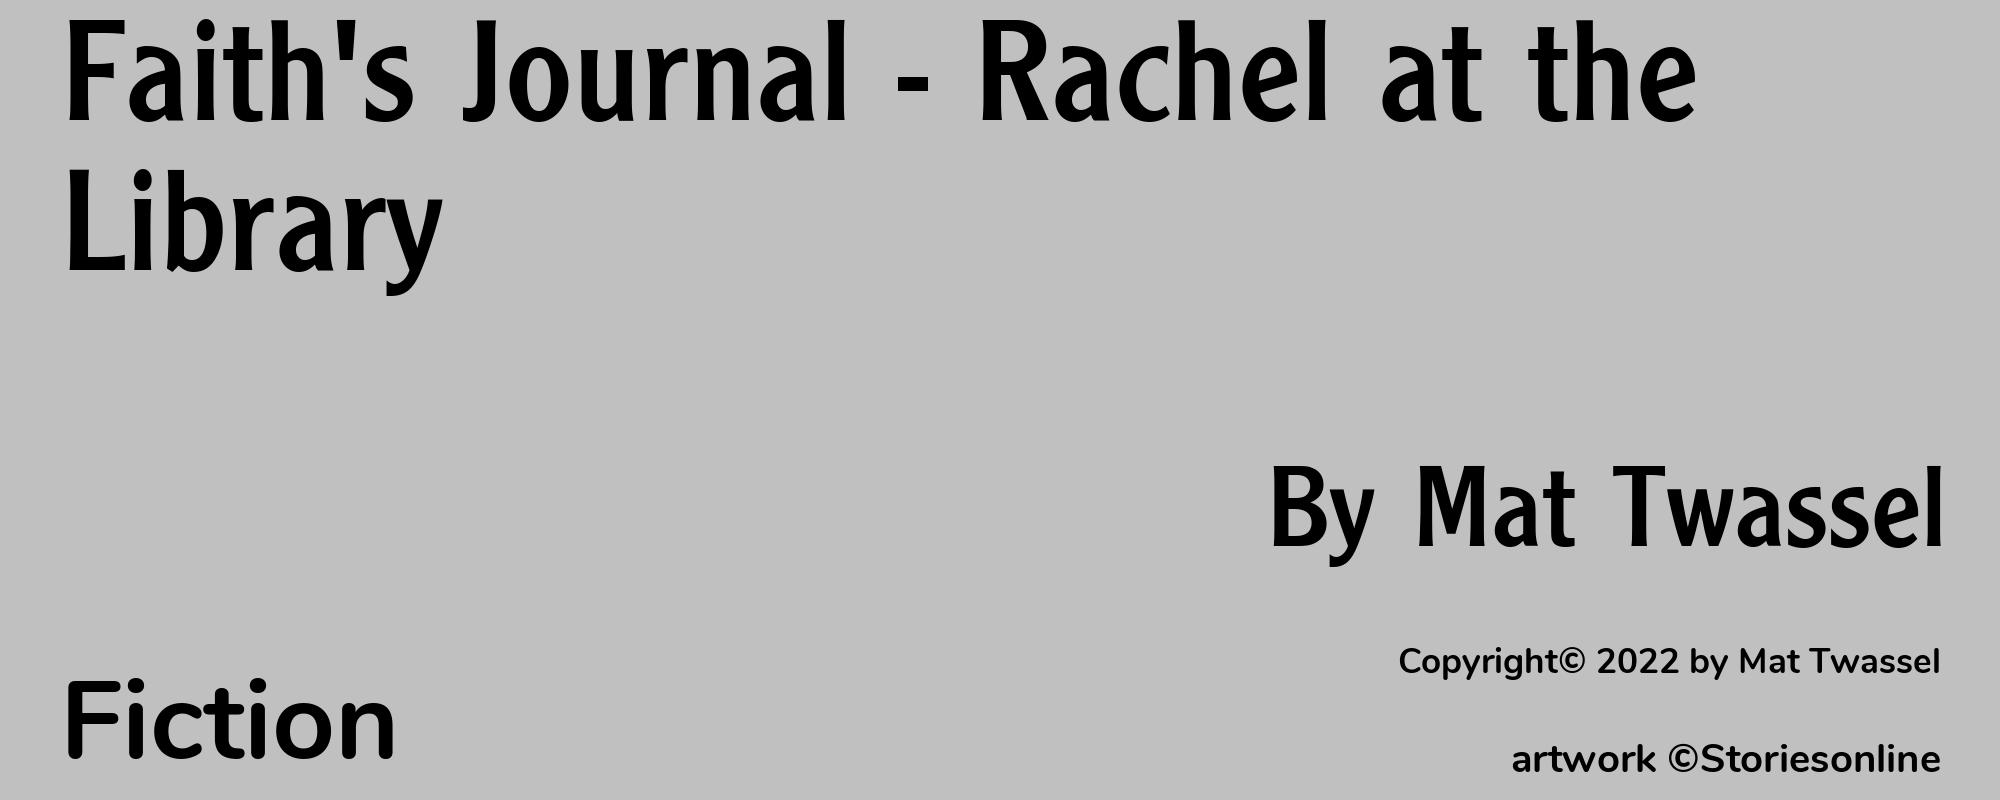 Faith's Journal - Rachel at the Library - Cover